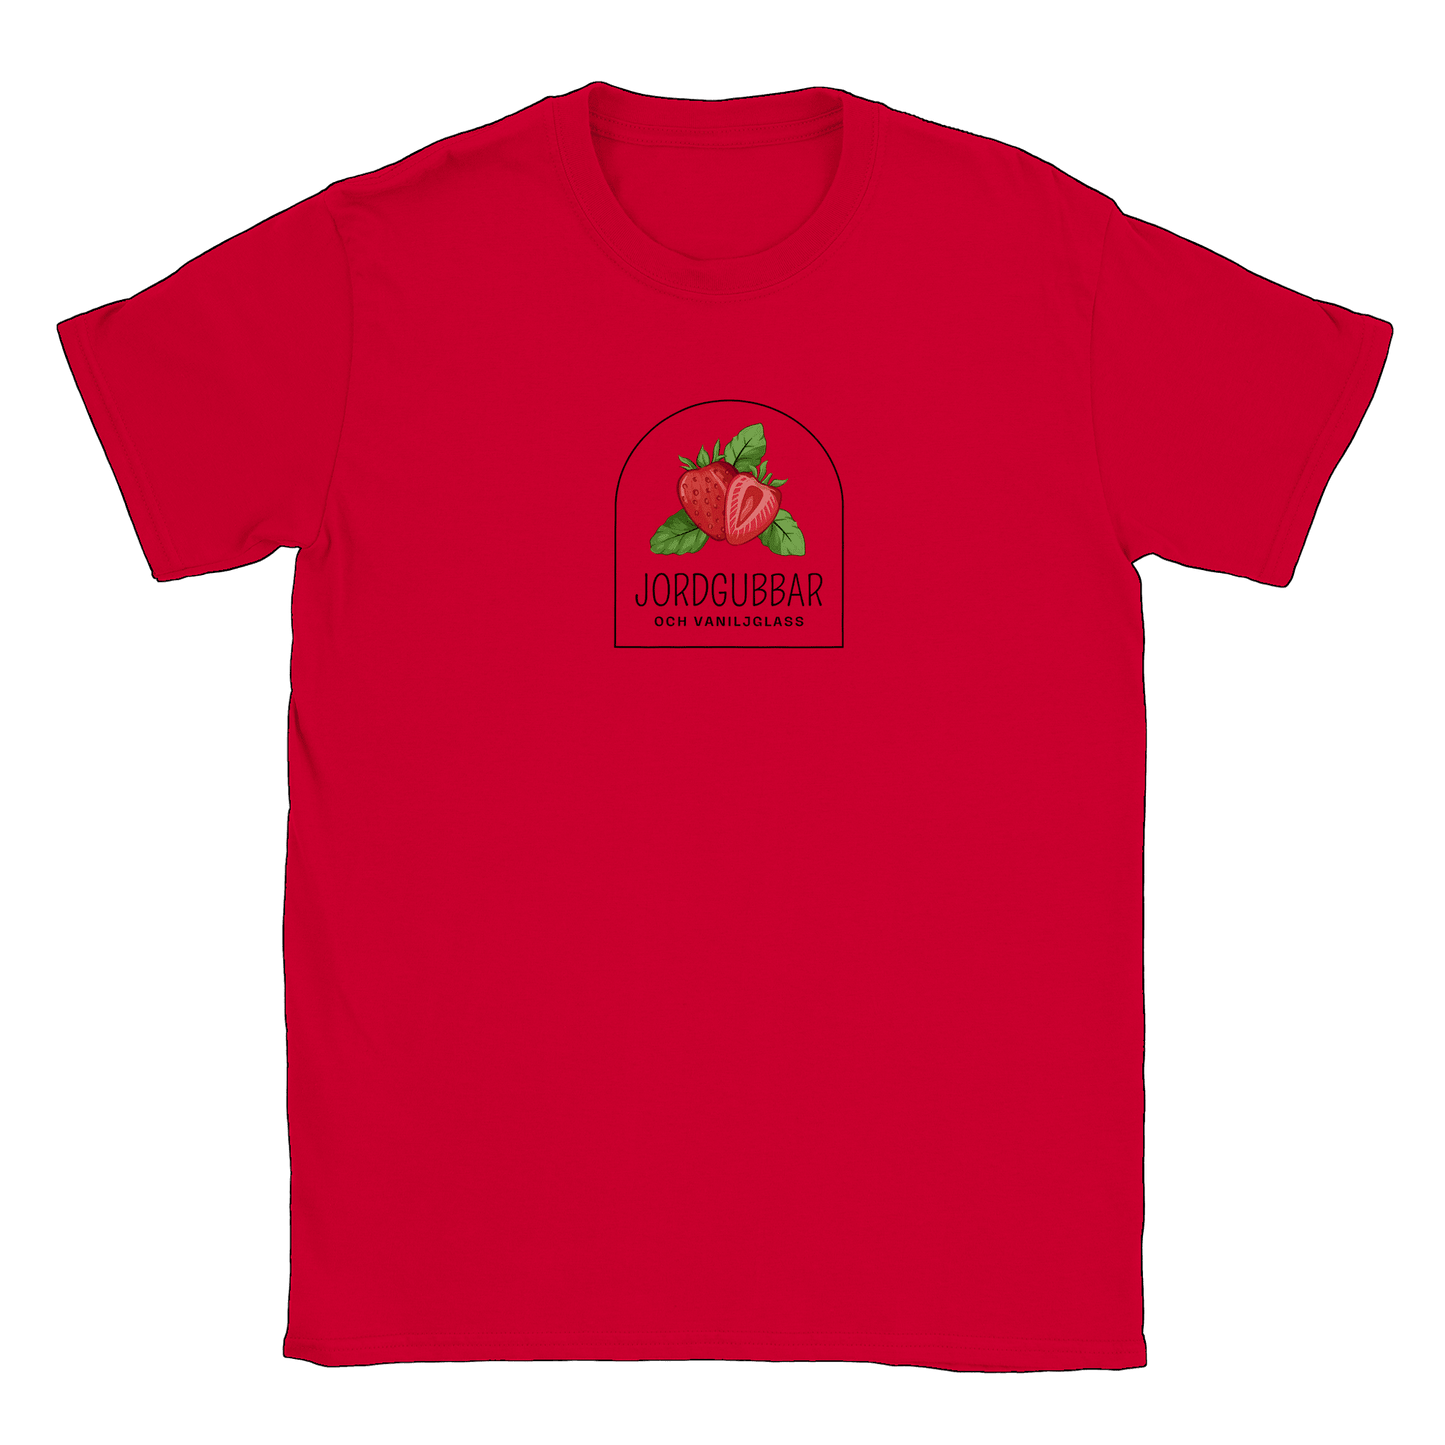 Jordgubbar och vaniljglass - T-shirt Röd